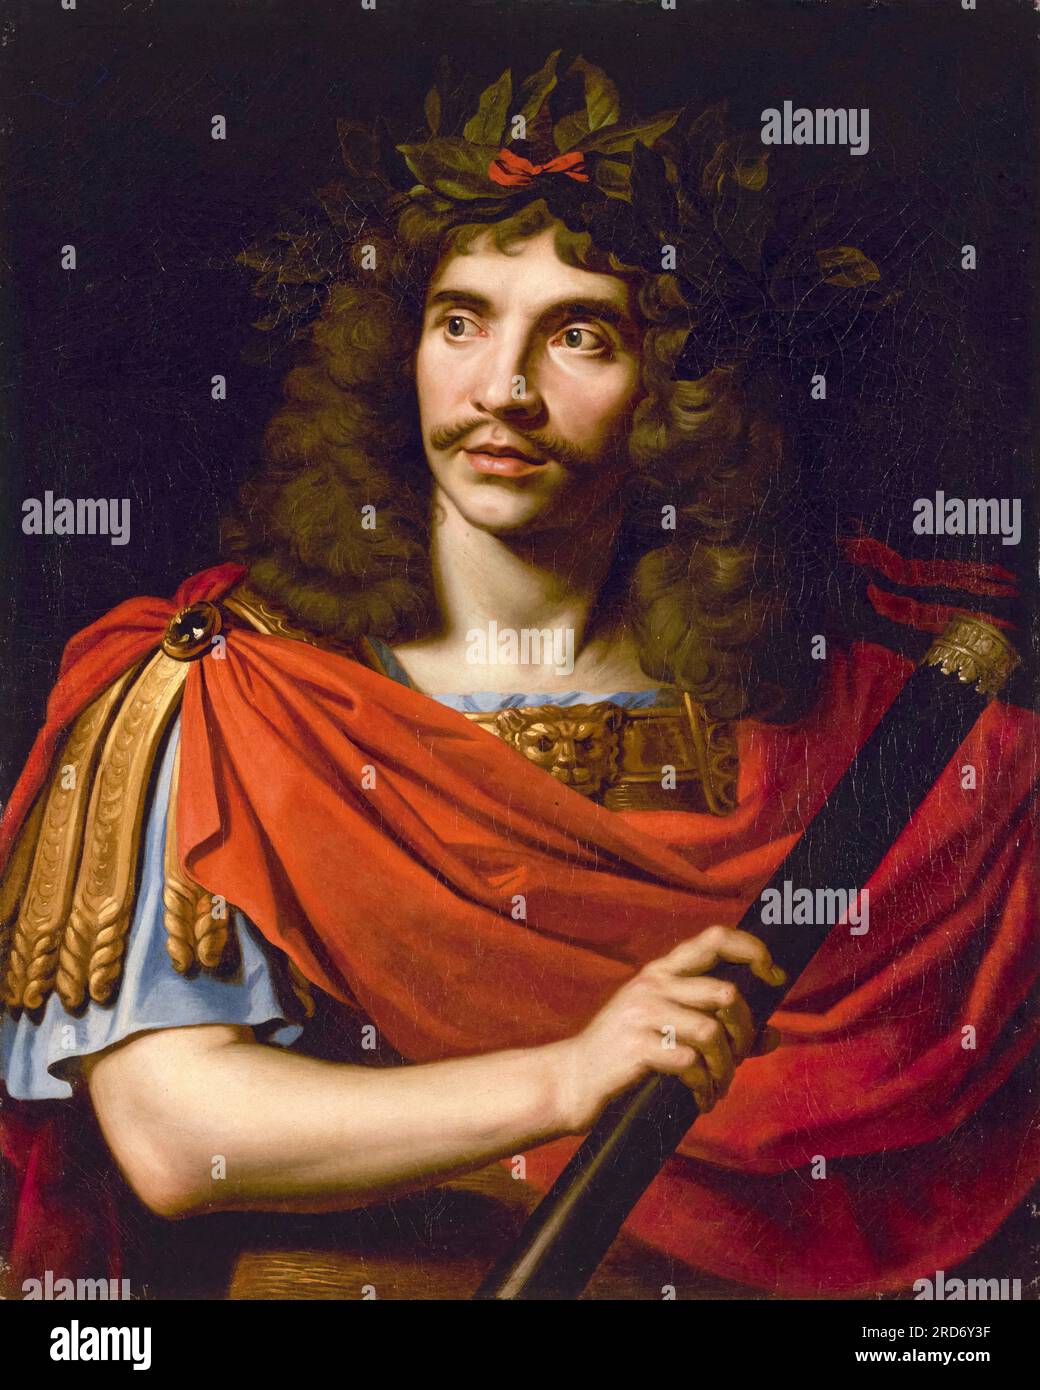 Molière (Jean-Baptiste Poquelin, 1622-1673) nel ruolo di Cesare nella morte di Pompeo, ritratto dipinto ad olio su tela di Nicolas Mignard, circa 1650 Foto Stock